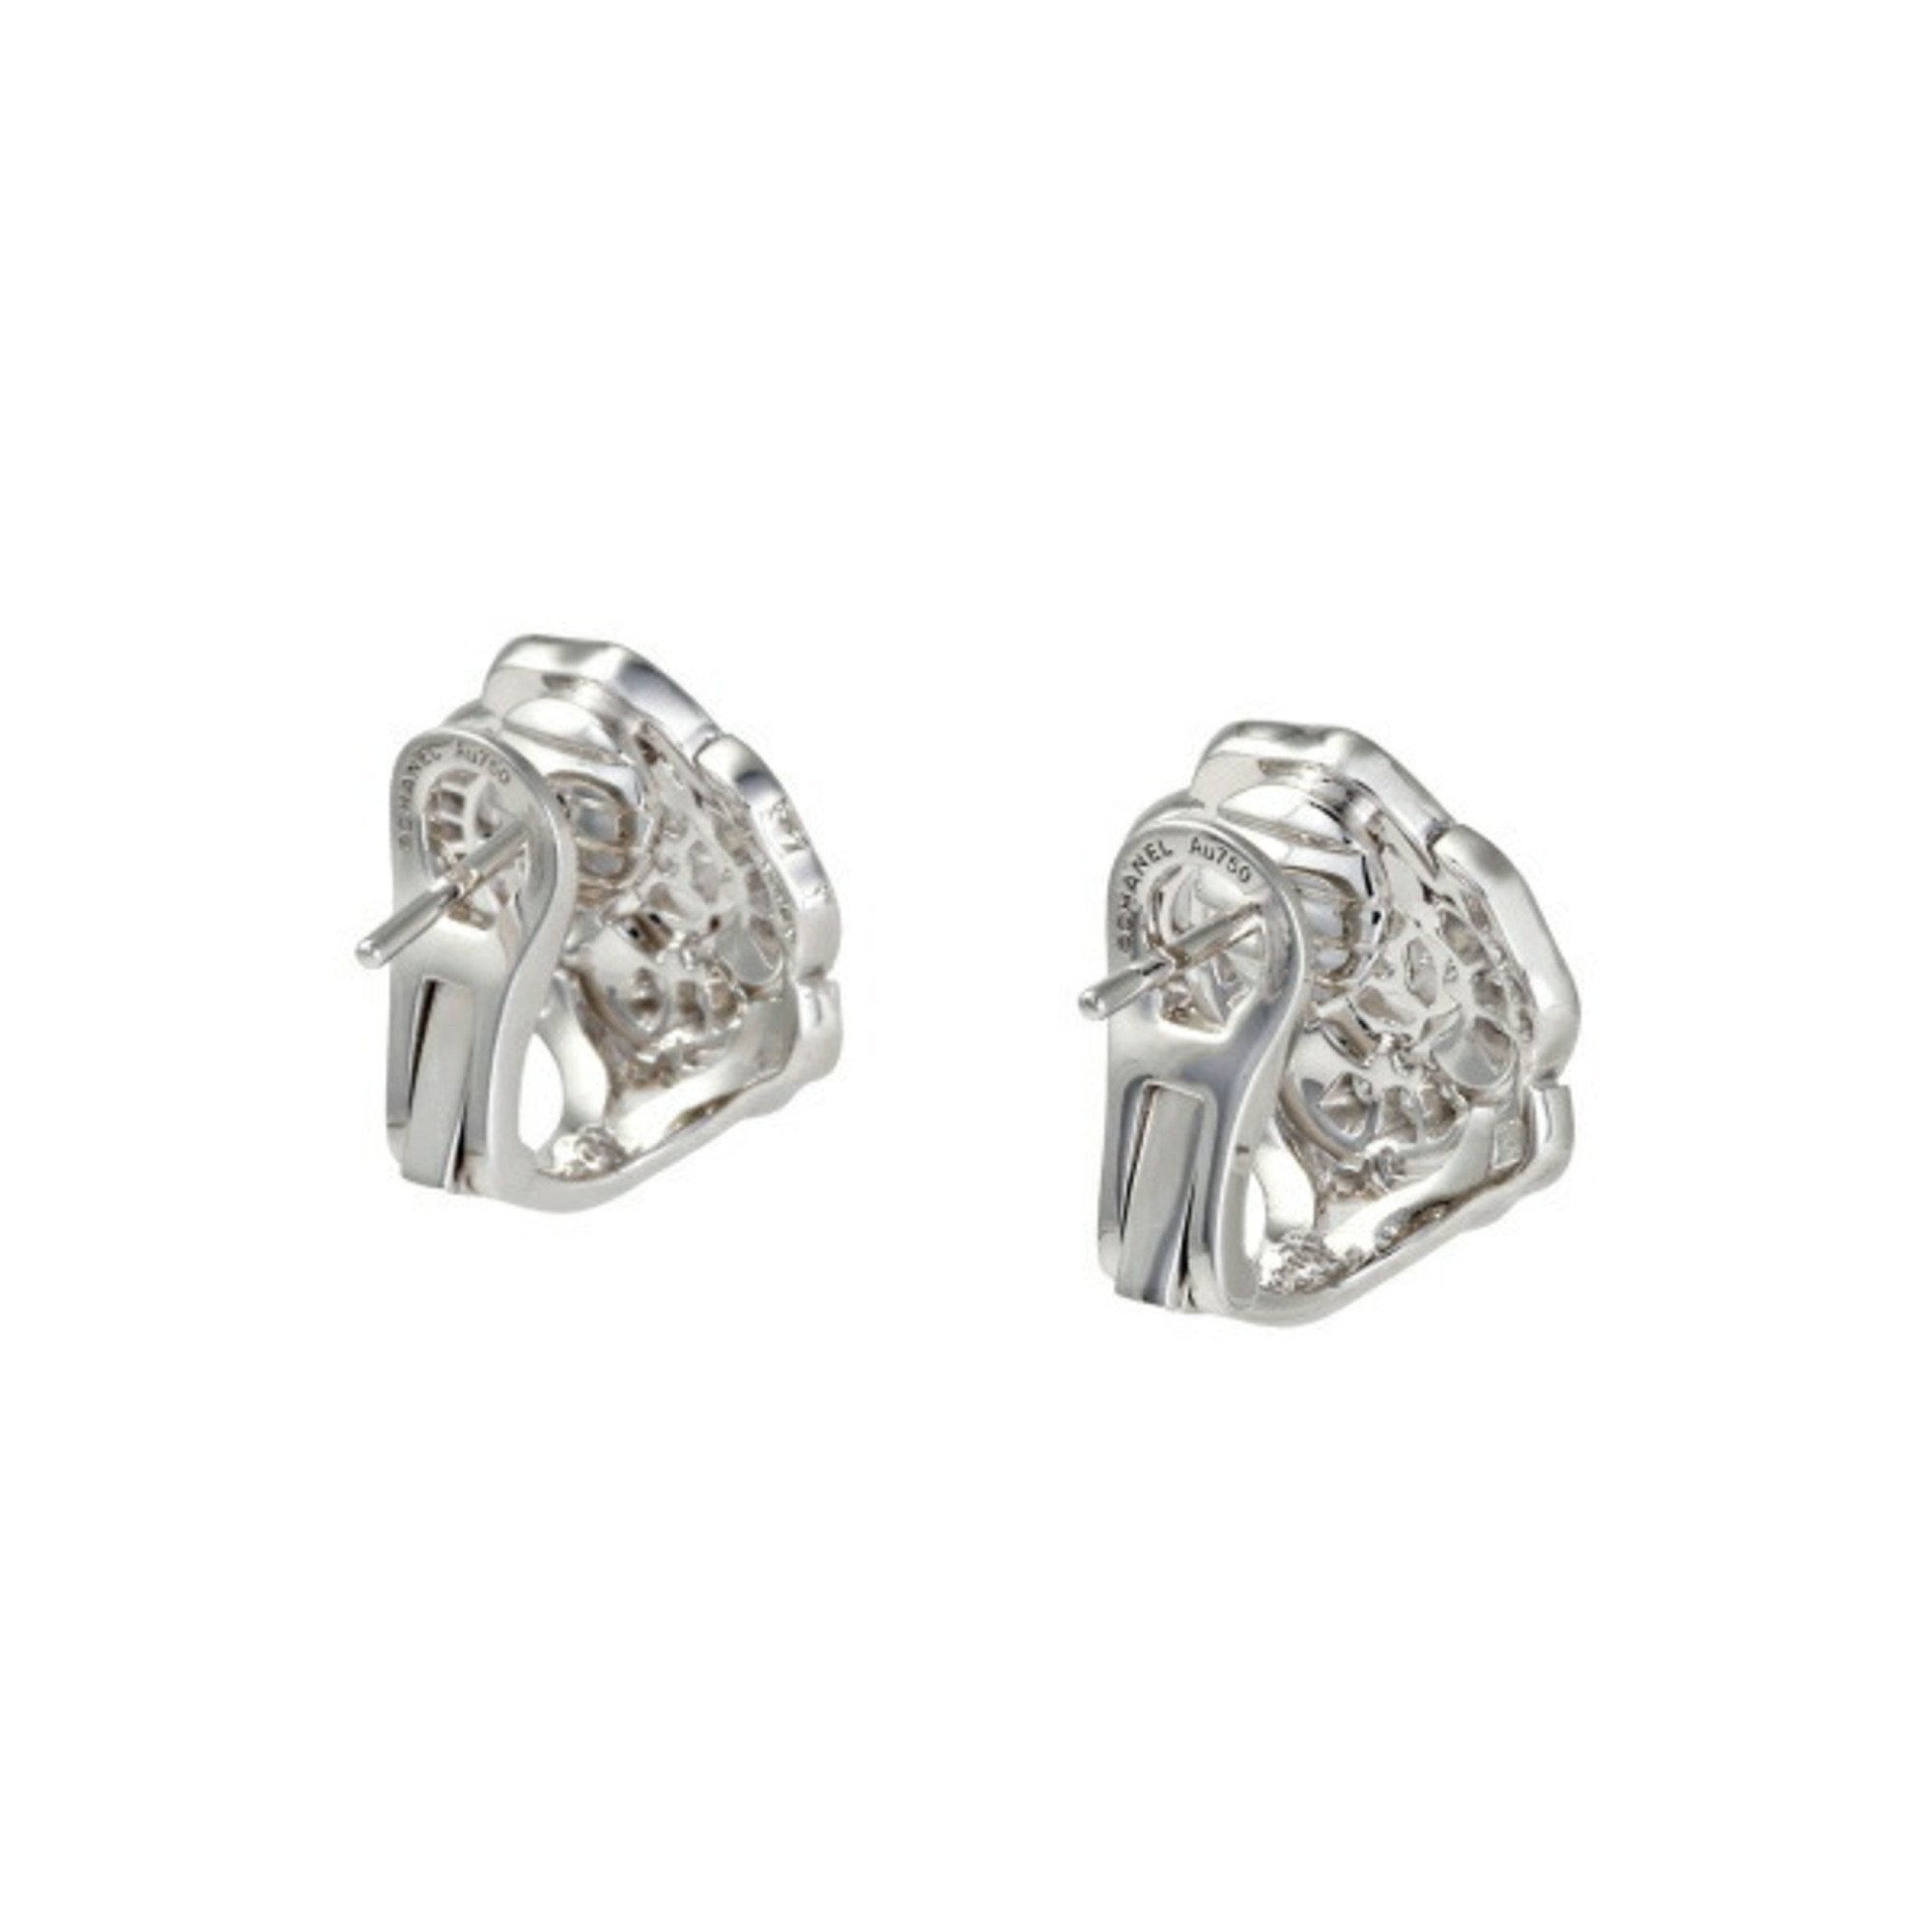 Chanel Camellia K18WG white gold earrings